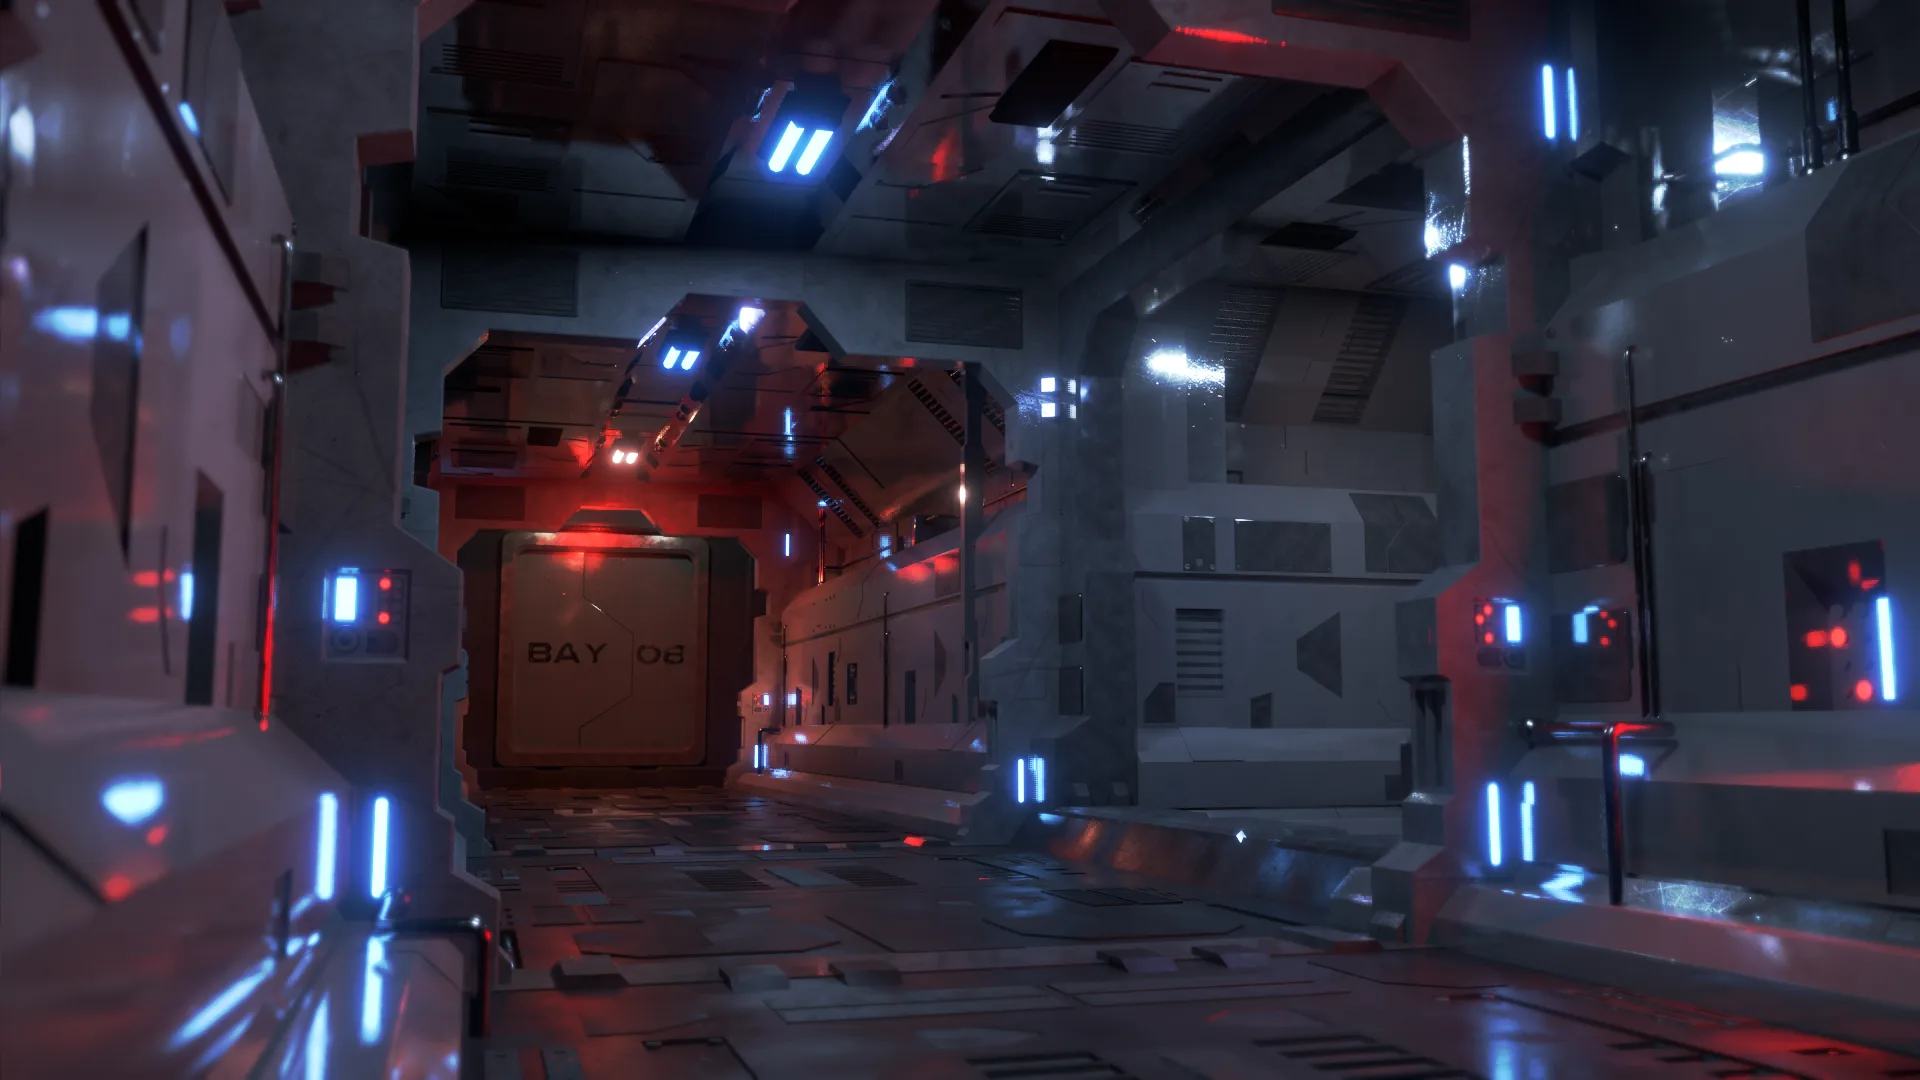 Dark Sci-Fi Corridor